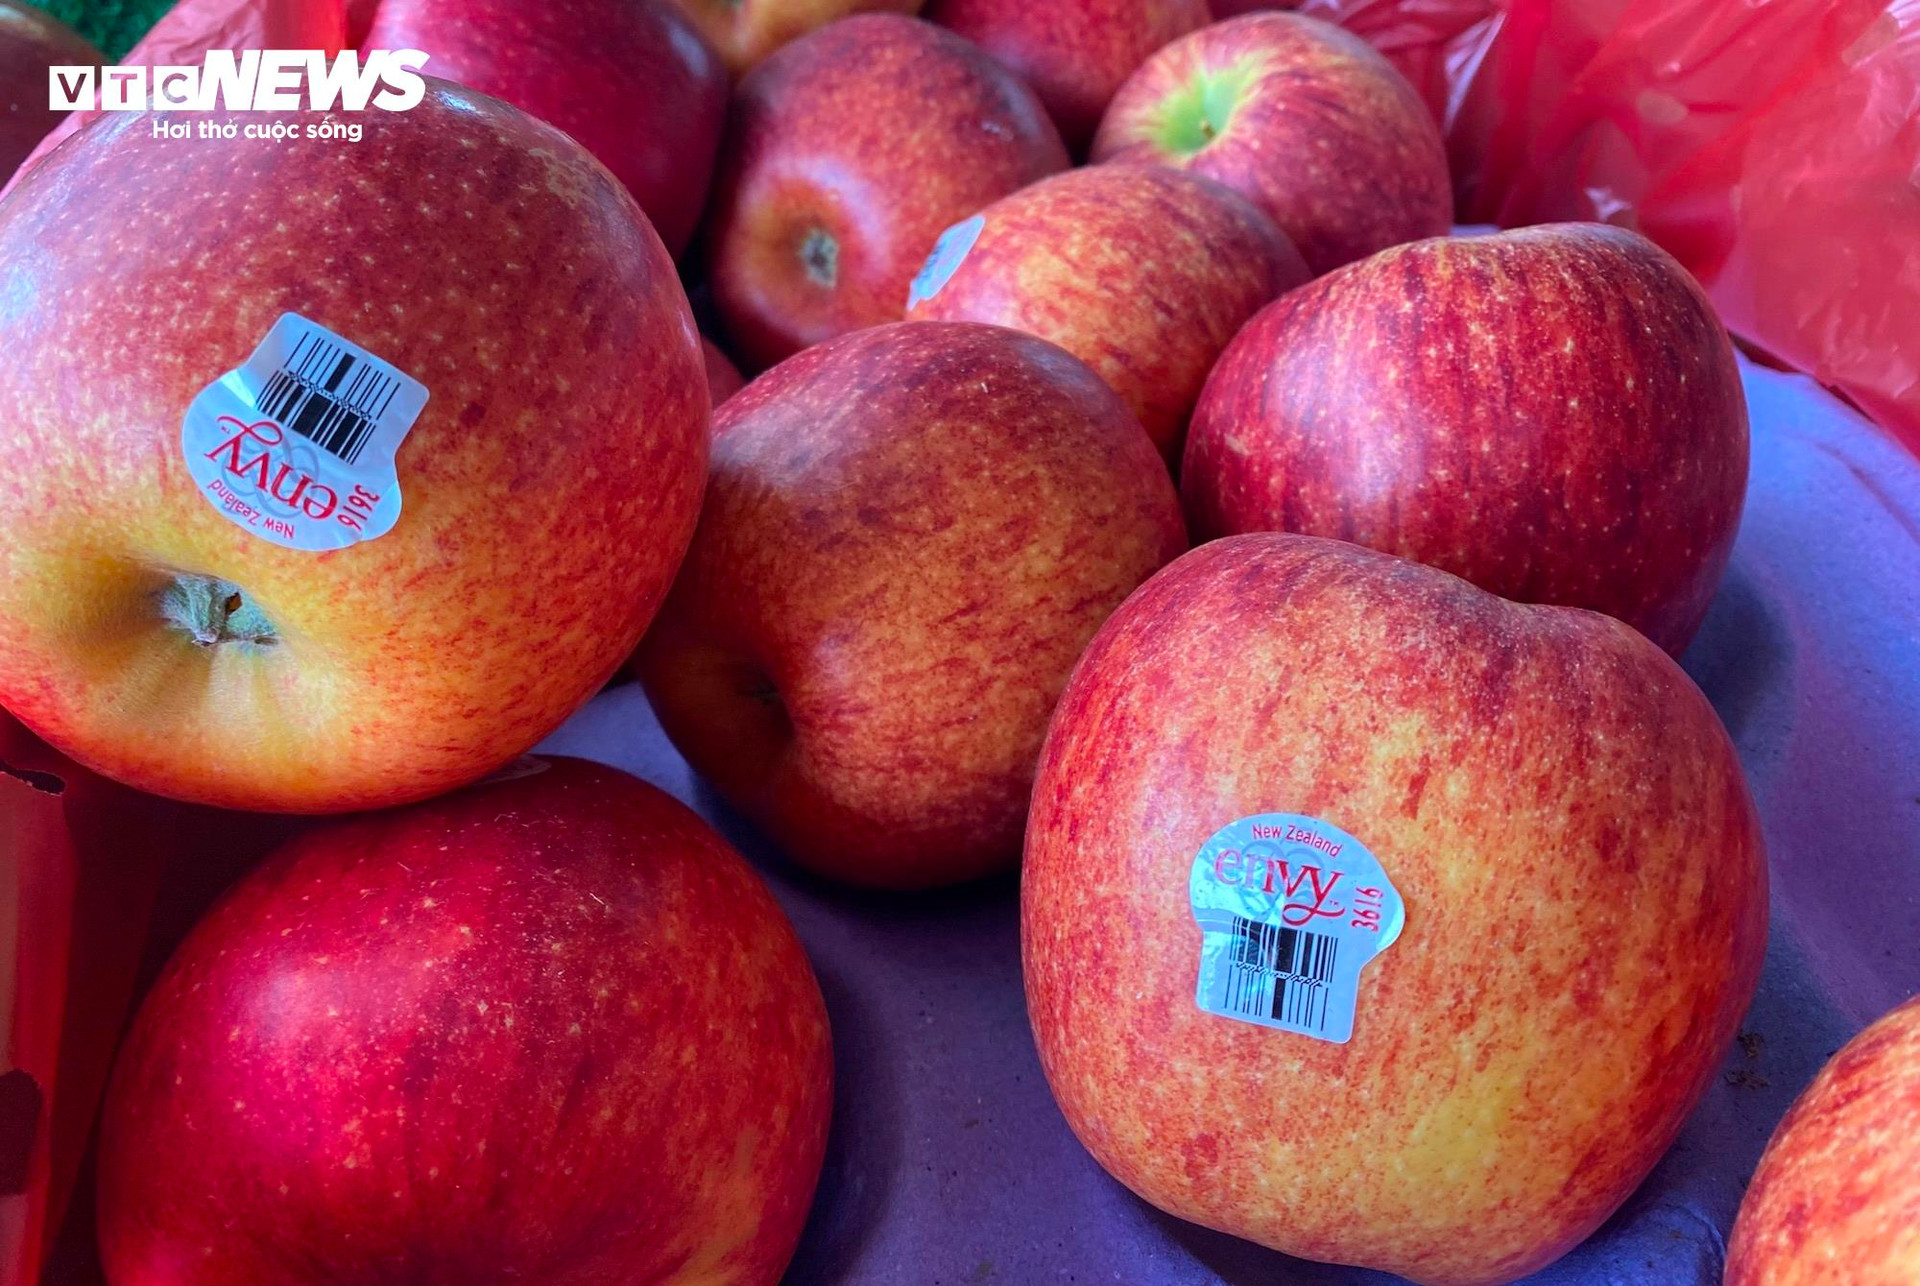 Loại táo Envy nhập từ Mỹ được mệnh danh là “nữ hoàng” của các cửa hàng trái cây hiện giá cũng giảm rất mạnh so với thời điểm đầu năm.